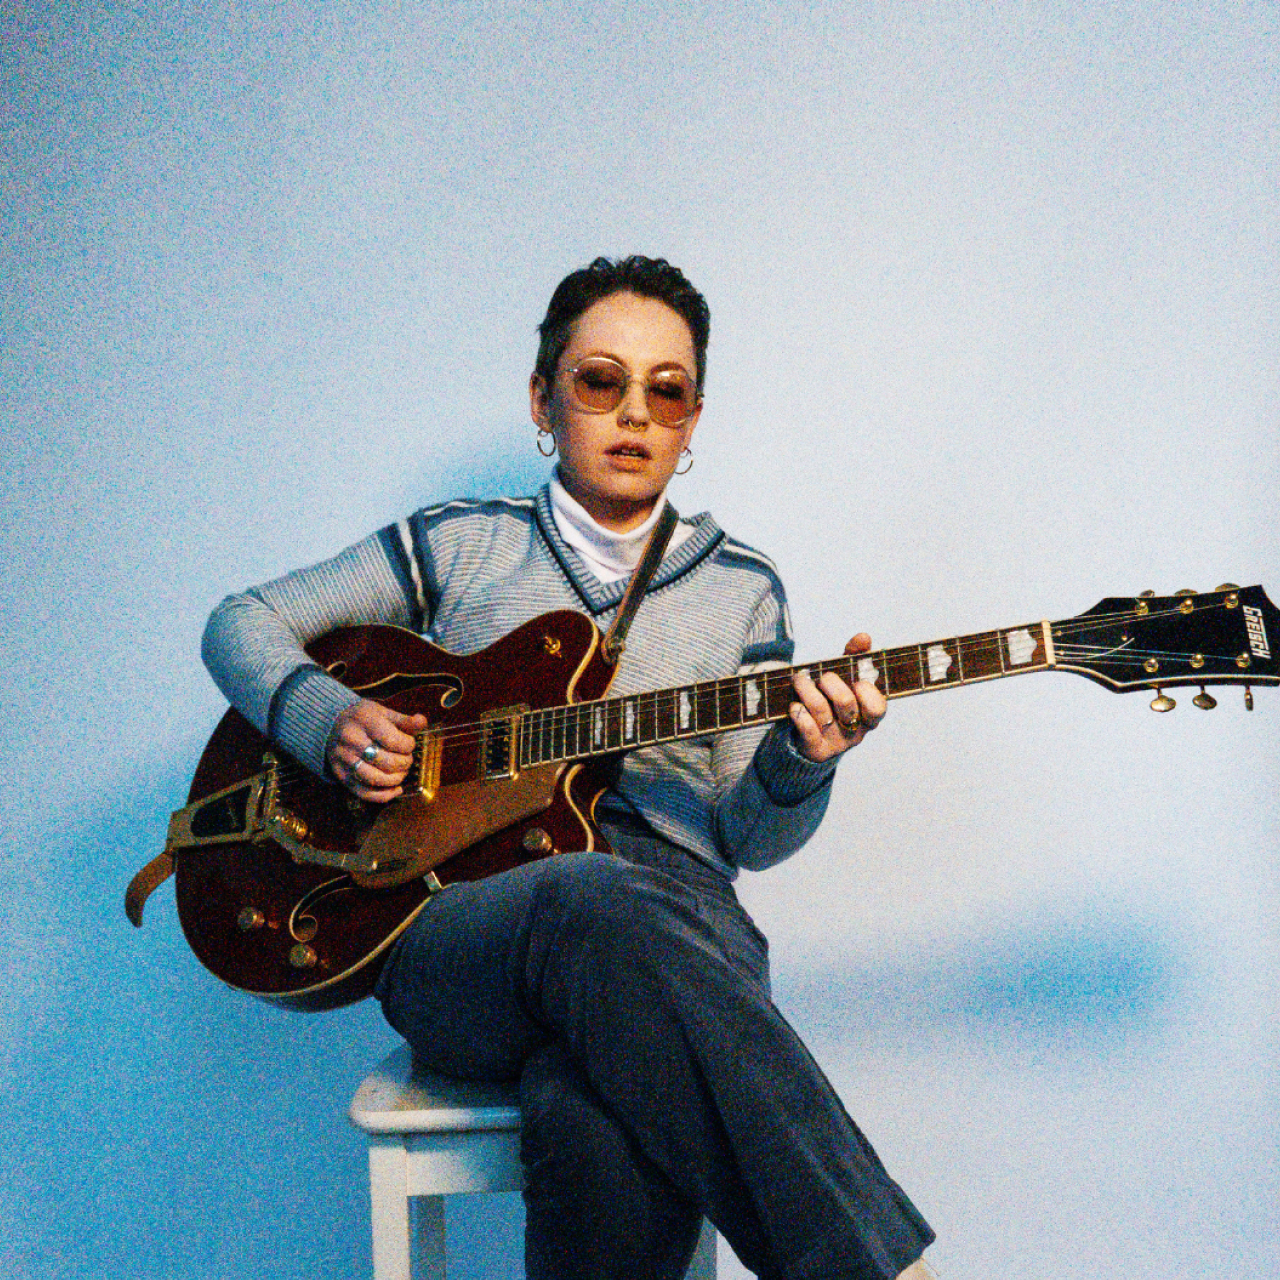 의자에 앉아 기타를 연주하는 아티스트 니아 윈